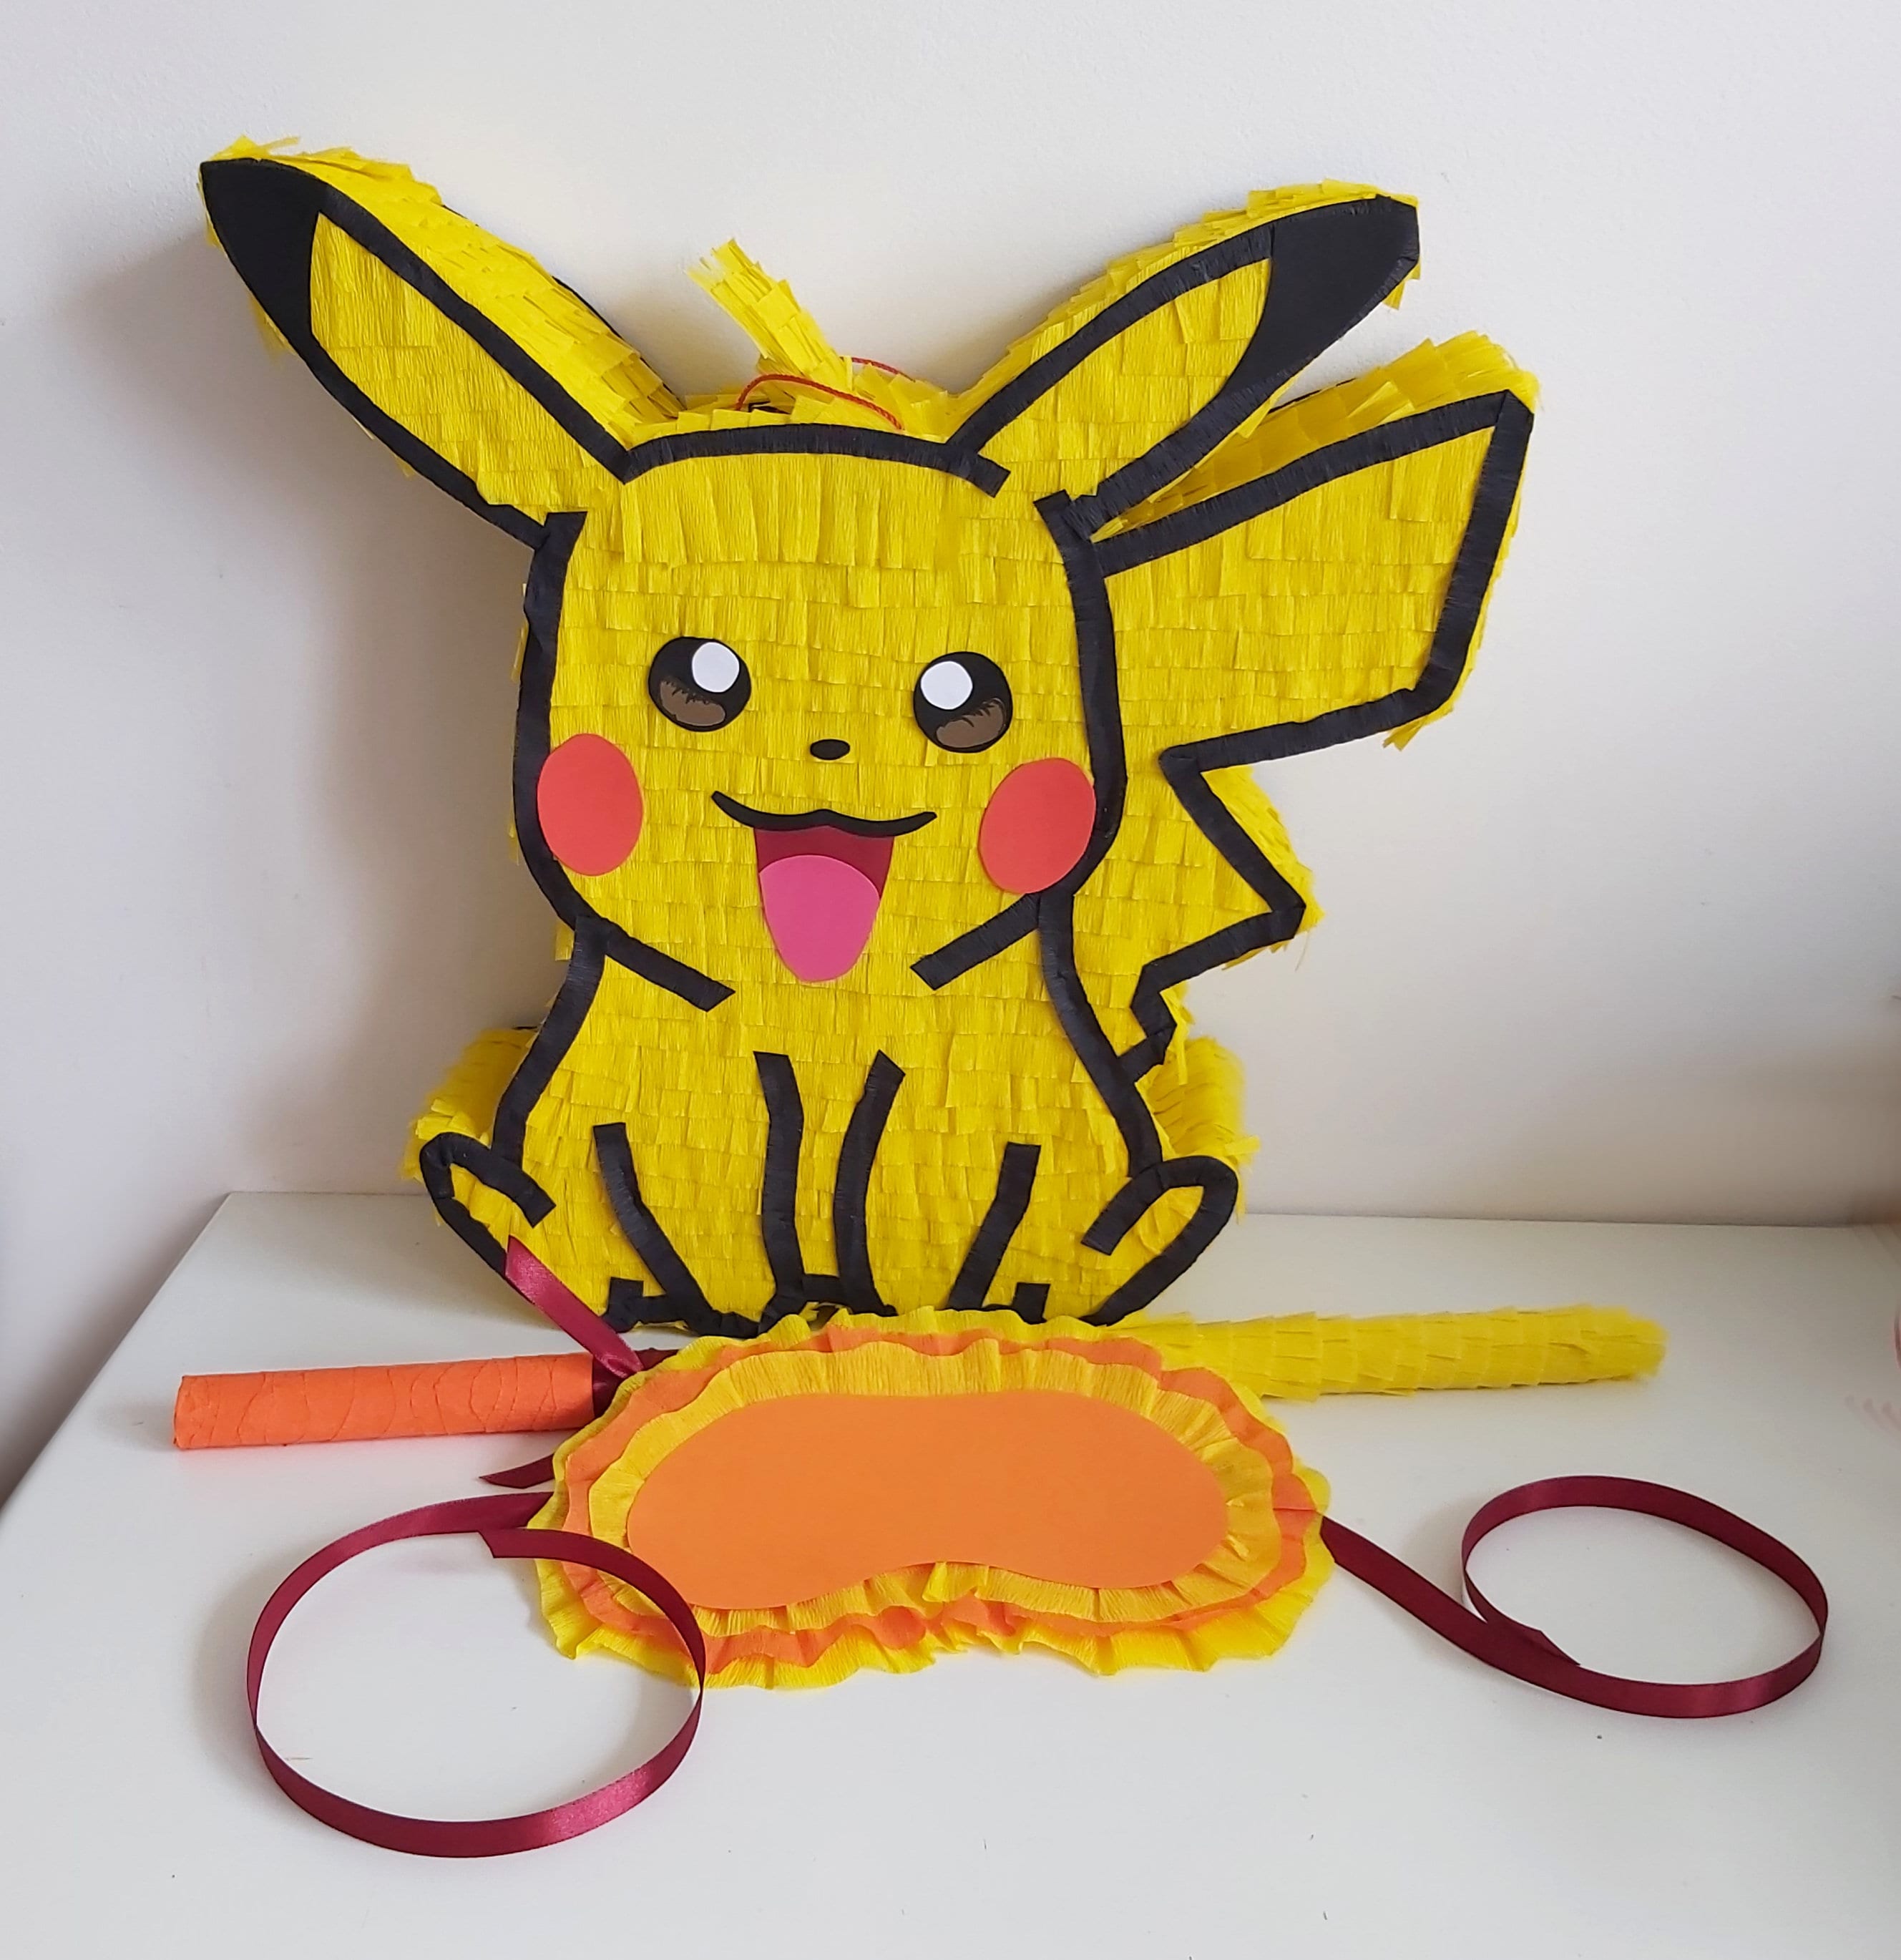 Piñata Pokemon Número A Elegir 80 Cm Fiesta Decoración